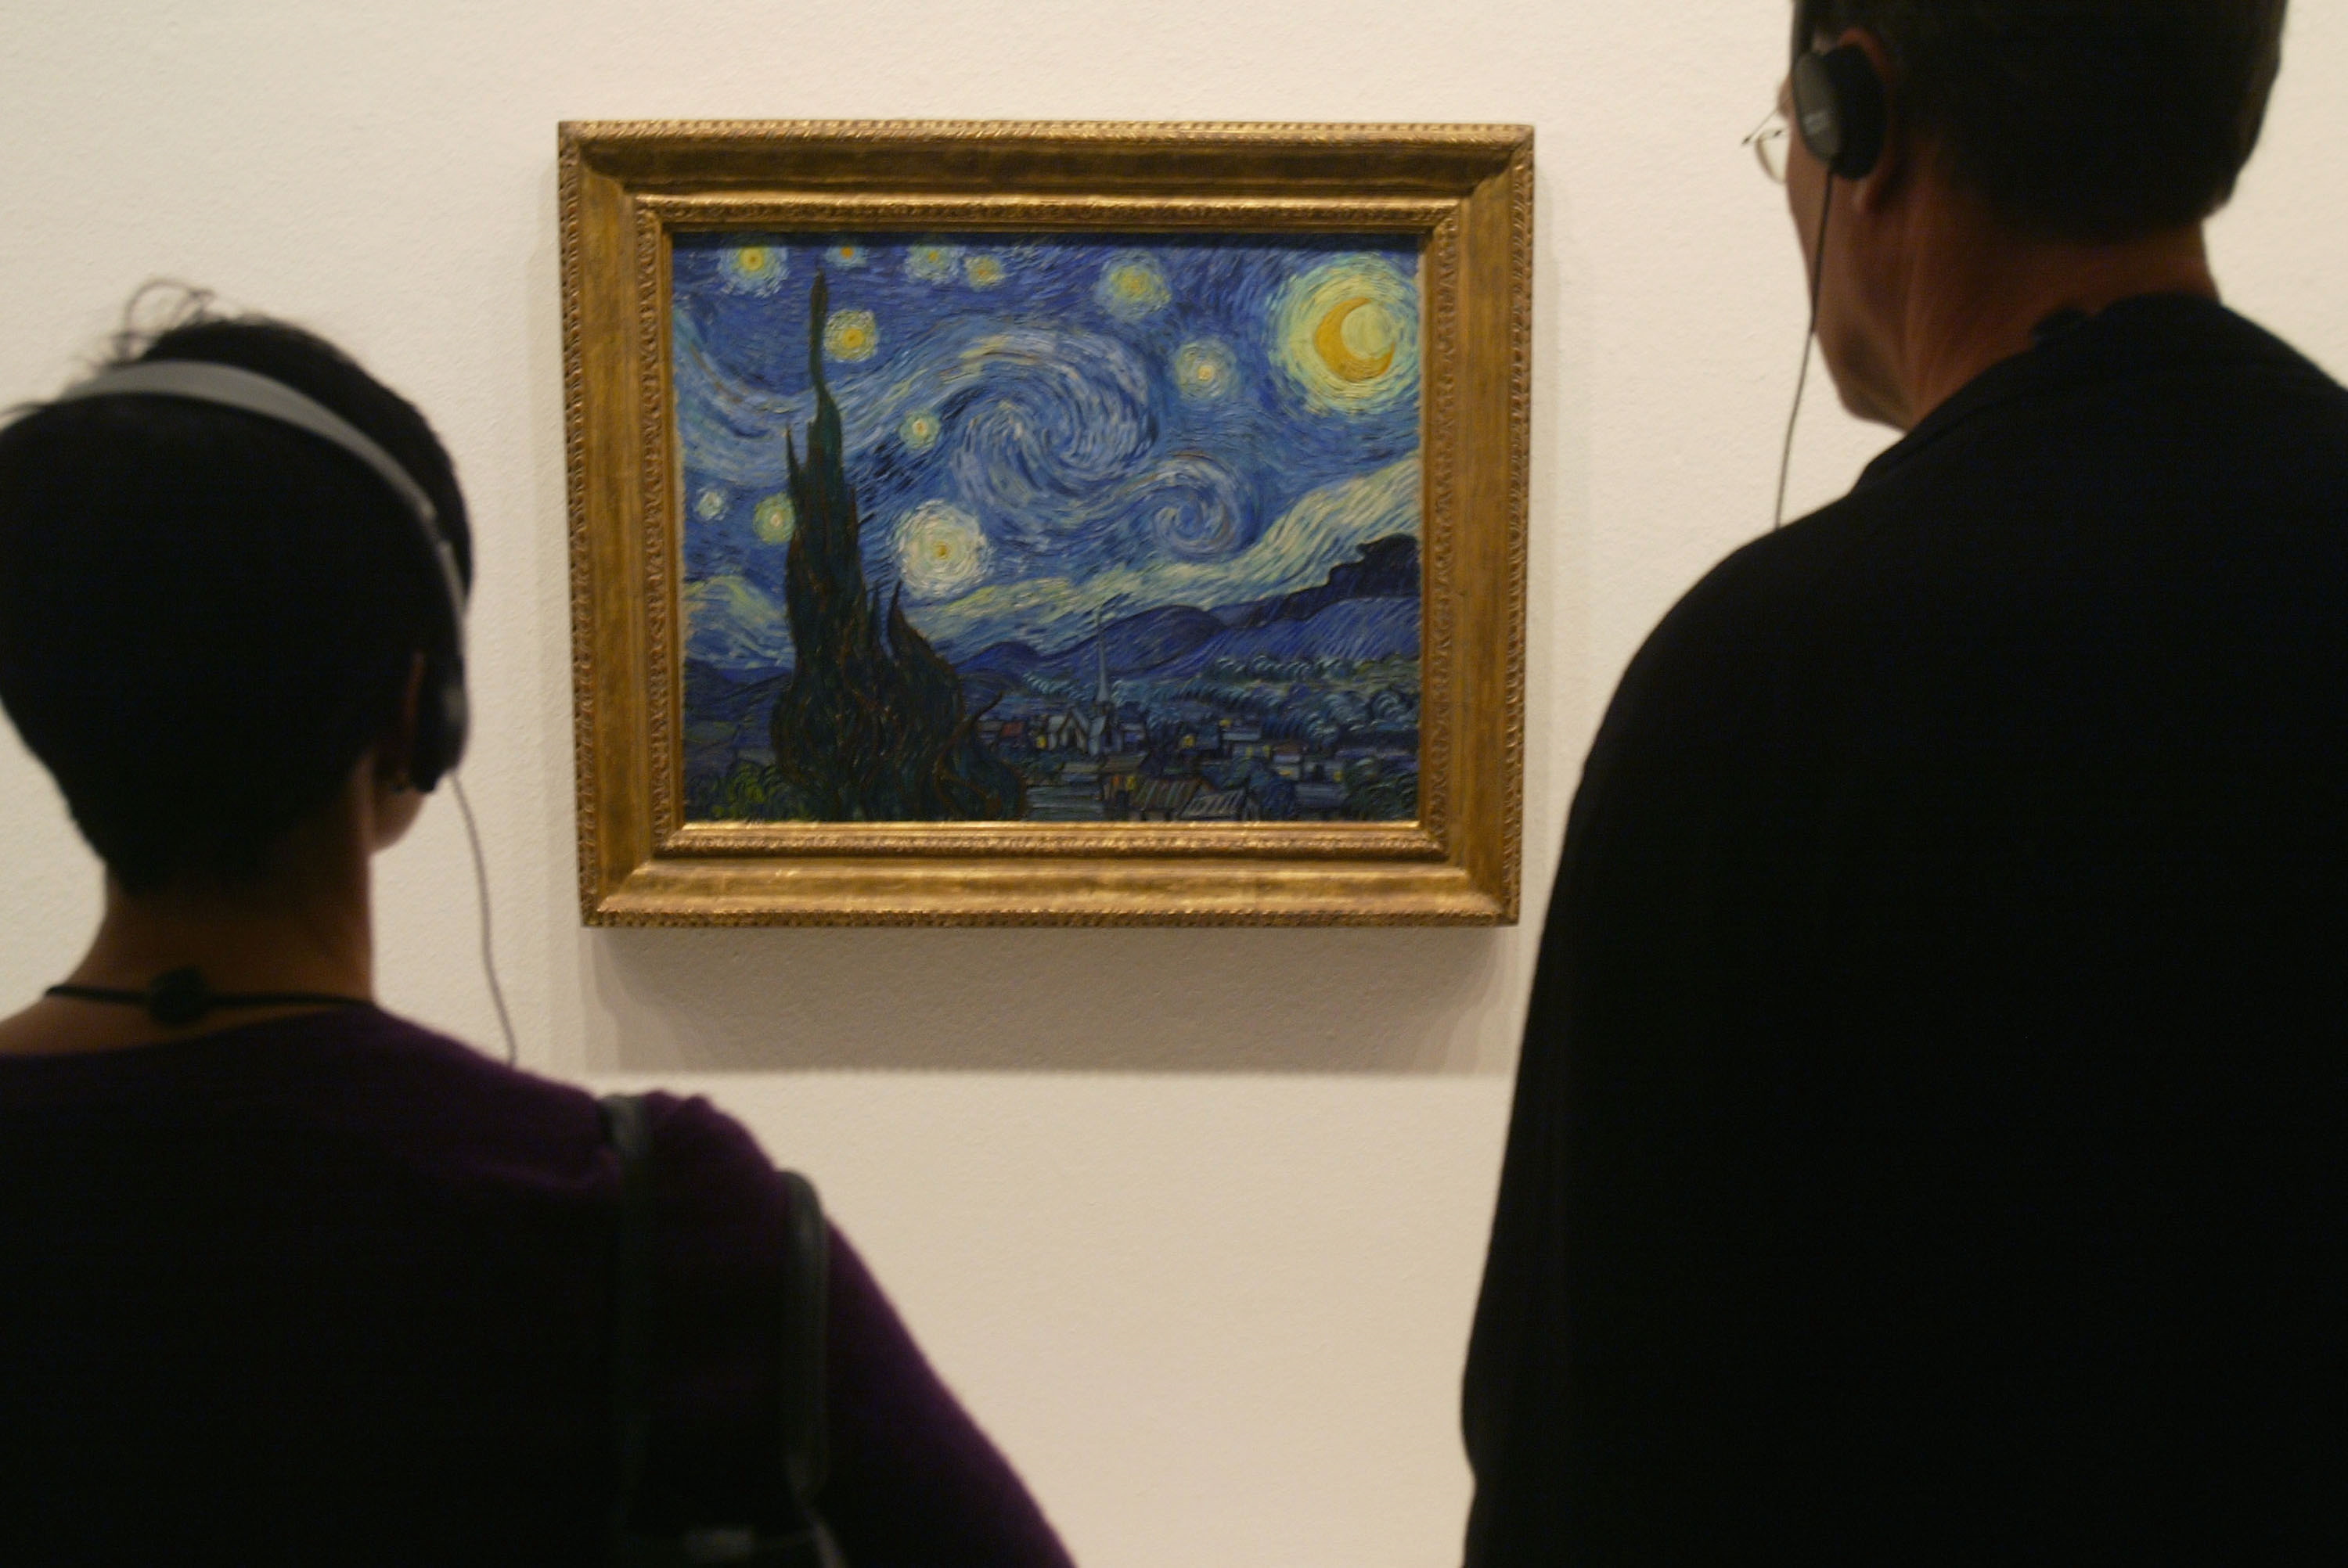 <p>&bdquo;Звездна нощ&ldquo;</p>

<p>Една от най-интригуващите картини на великия Винсент ван Гог. Художникът живее в приют в Сен Реми, Франция, където се лекува от психическо заболяване, когато рисува &bdquo;Звездна нощ&ldquo;. Вдъхновен е от гледката през прозореца си.</p>